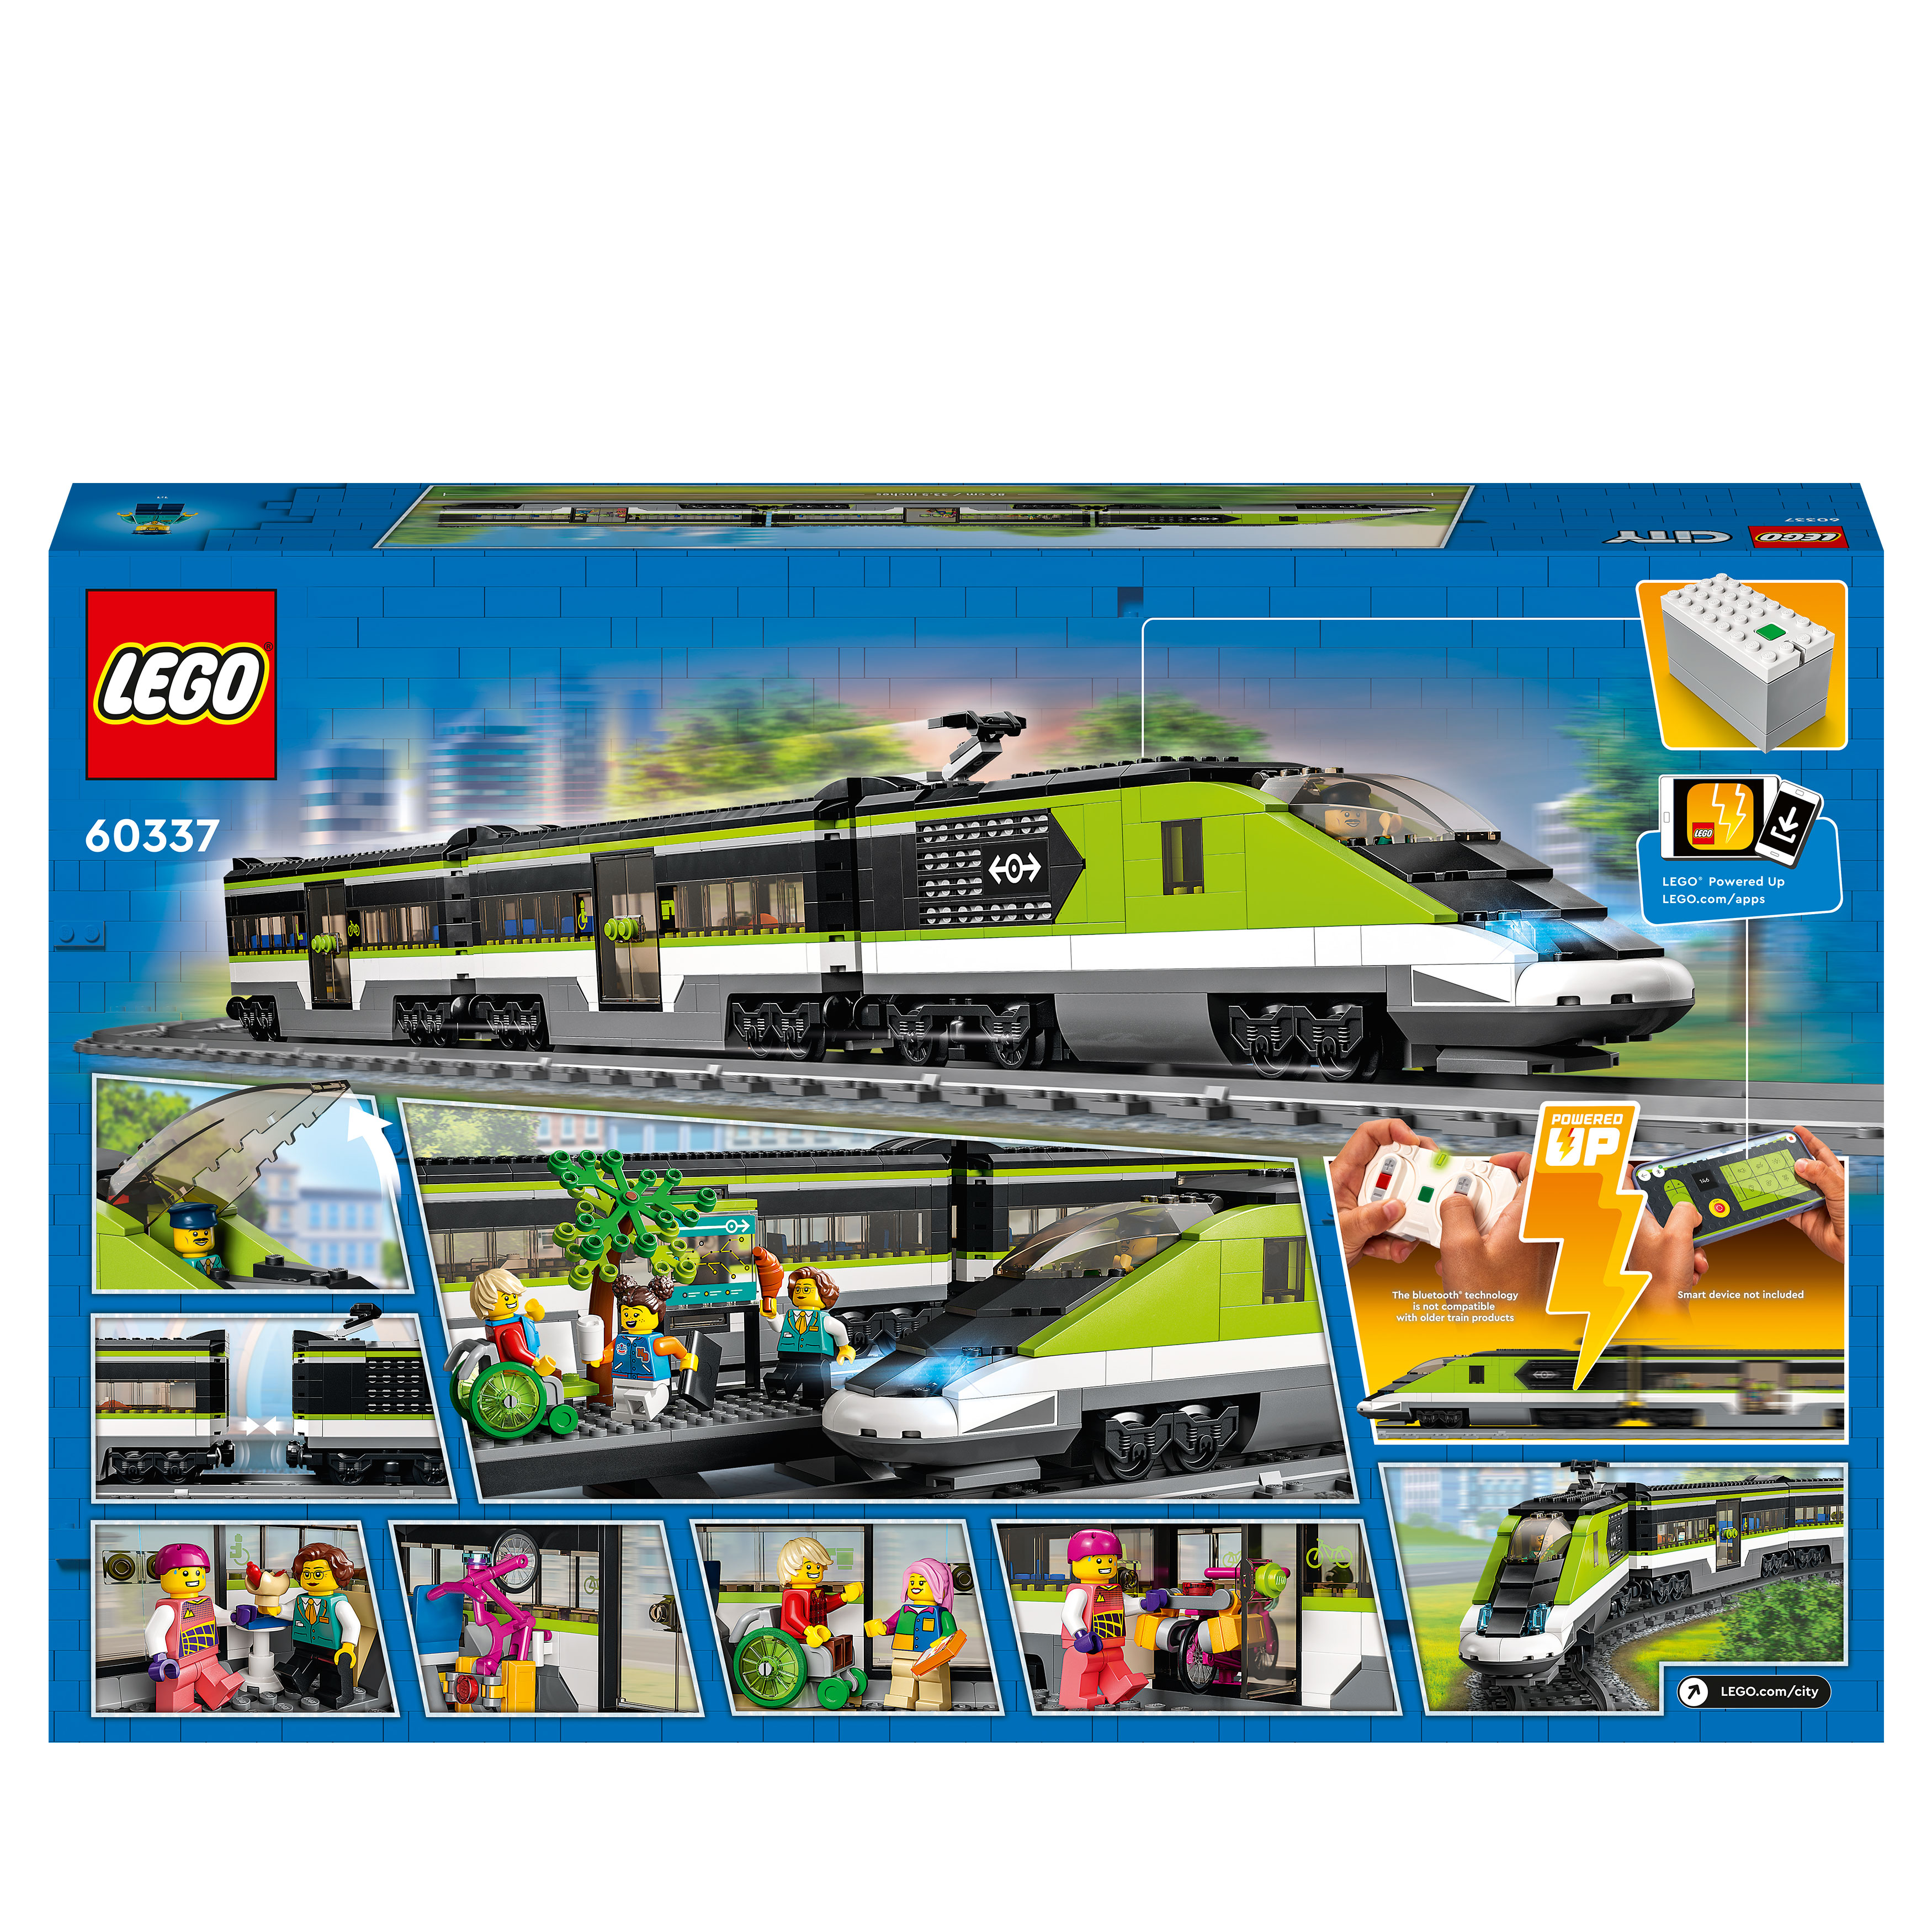 LEGO City 60337 Personen-Schnellzug Mehrfarbig Bausatz